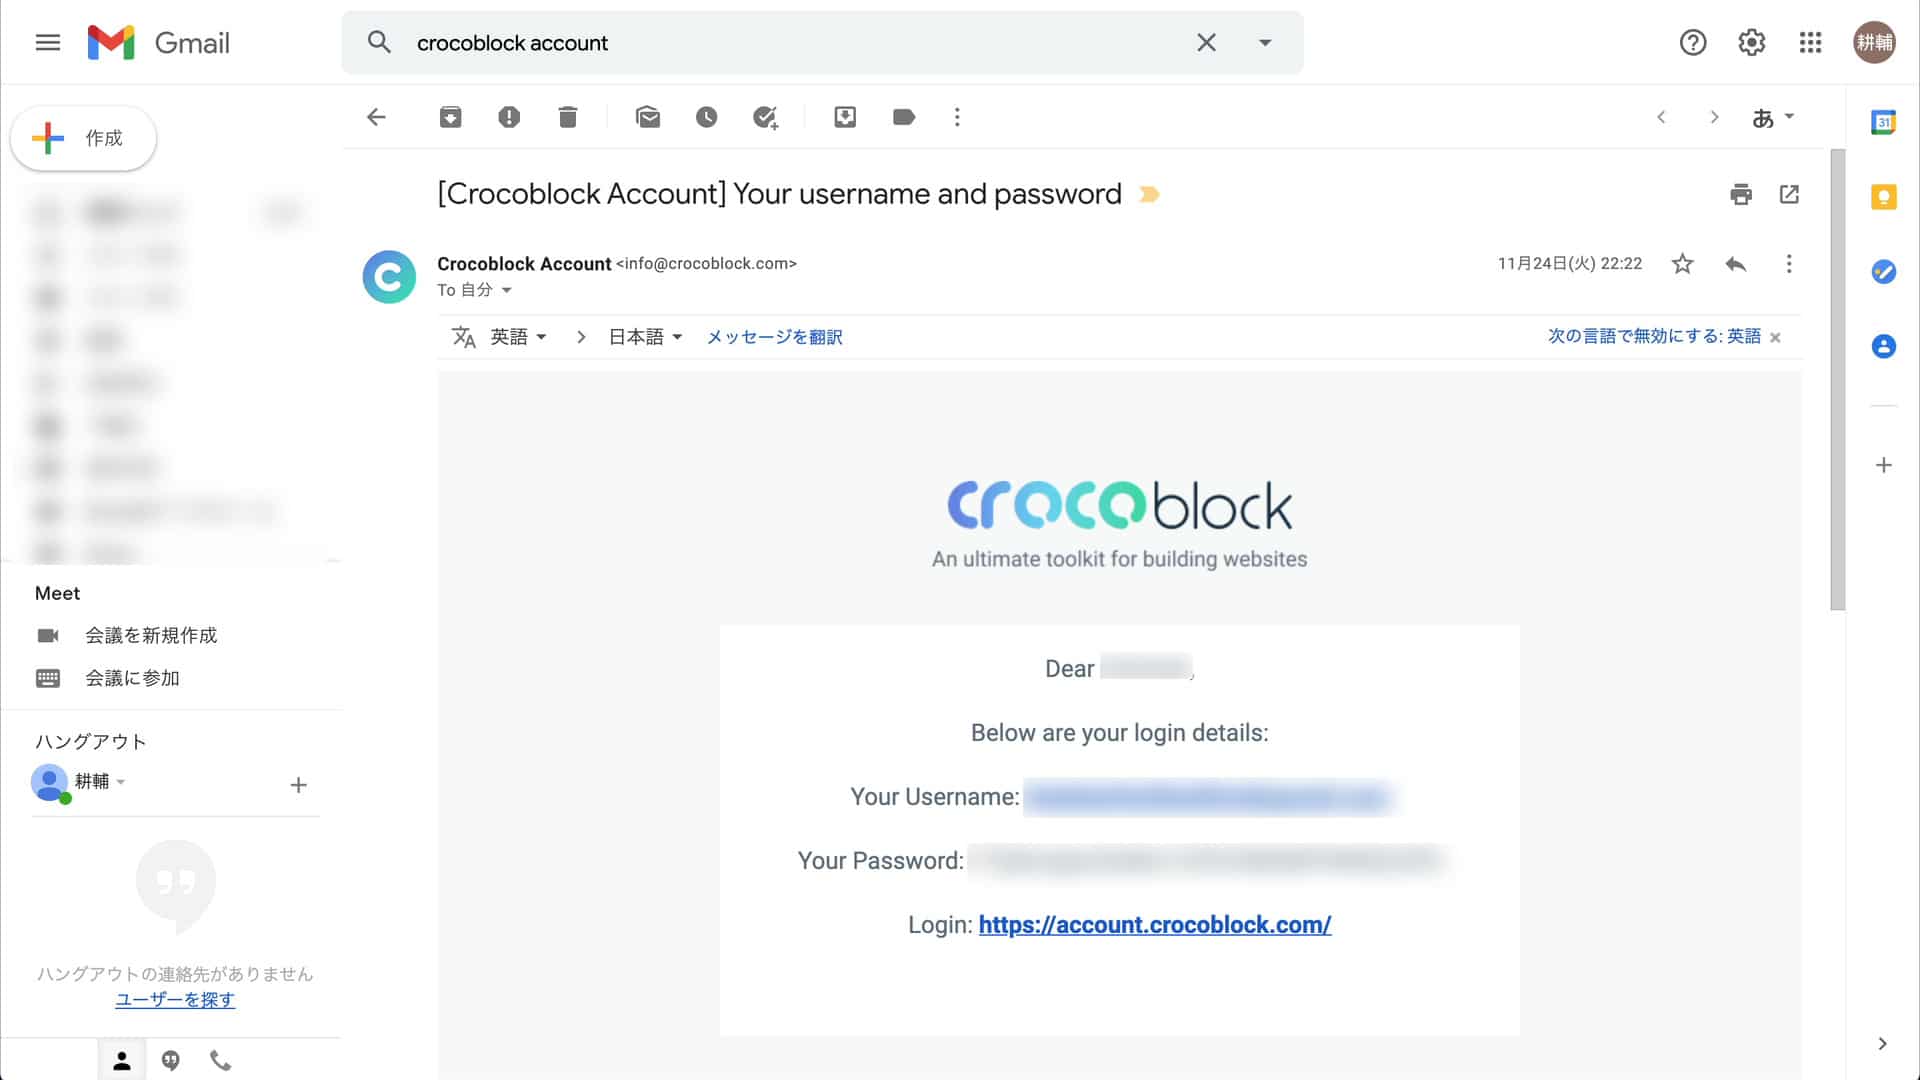 Crocoblockからのメール